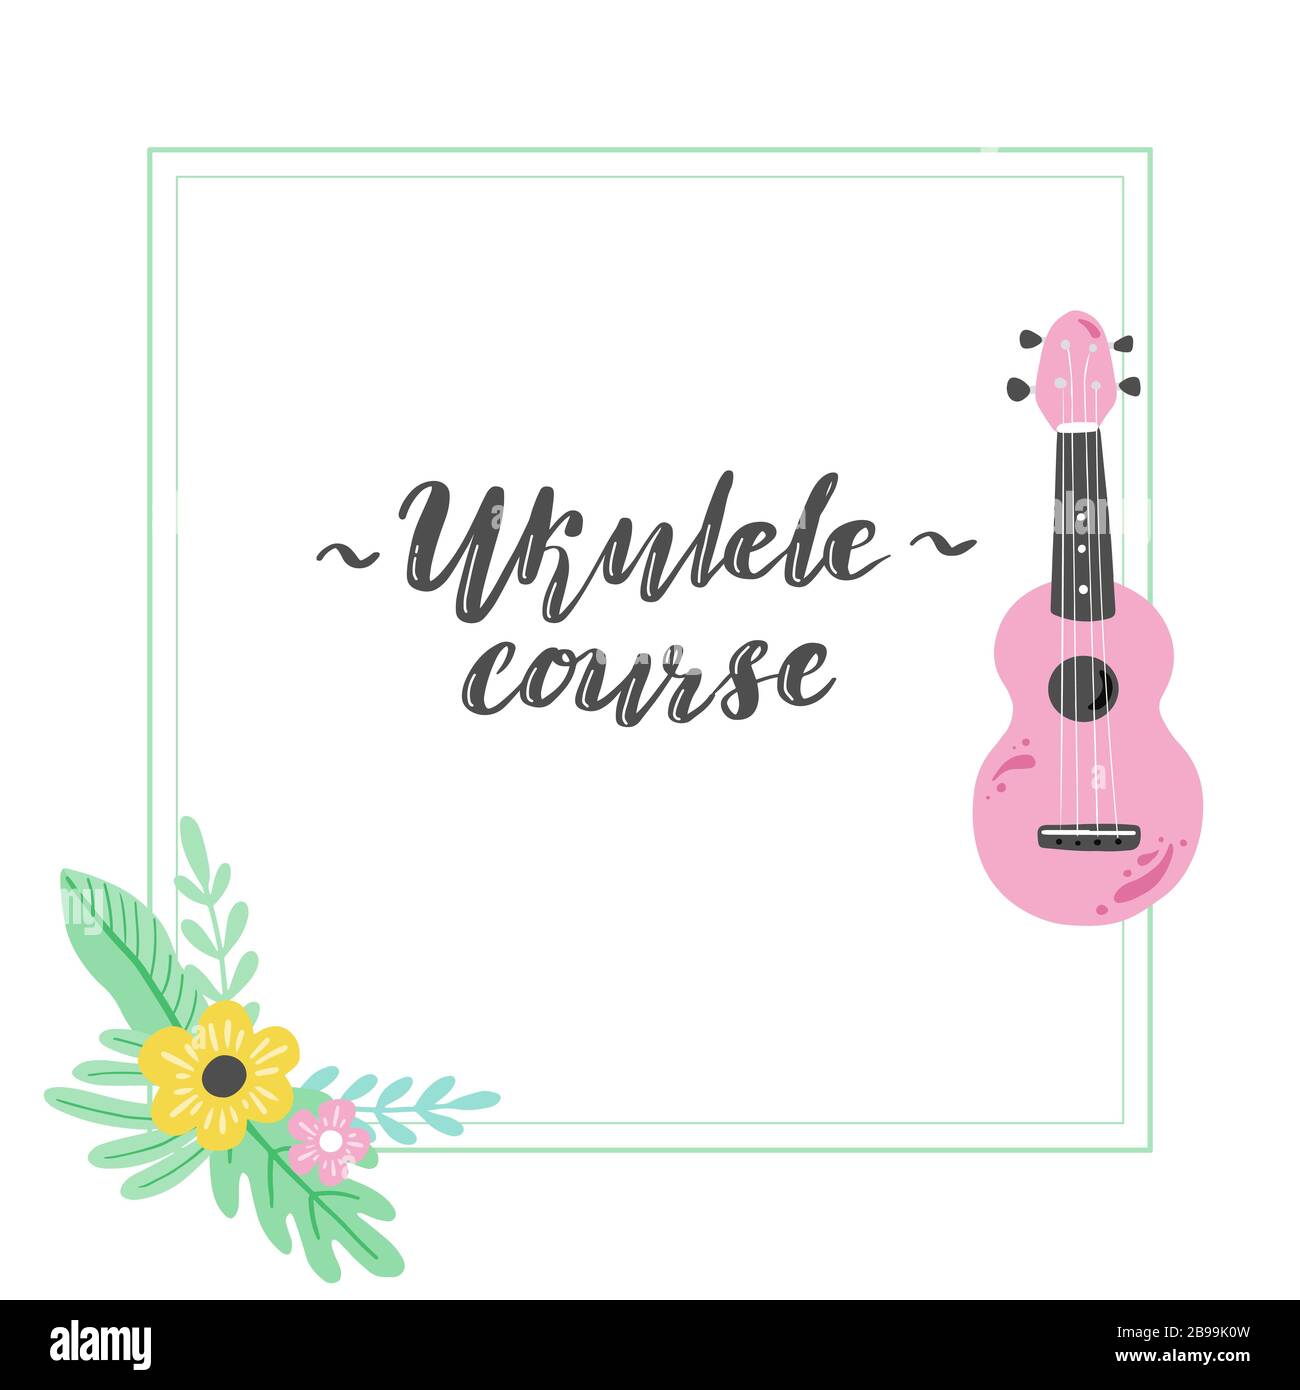 Joli ukulele de dessin animé pour affiche d'été, motif carte avec texte lettrage cours Ukulele. Petite guitare, instrument de musique à cordes de style hawaï. Illuataration vectorielle de style simple dessiné à la main. Illustration de Vecteur